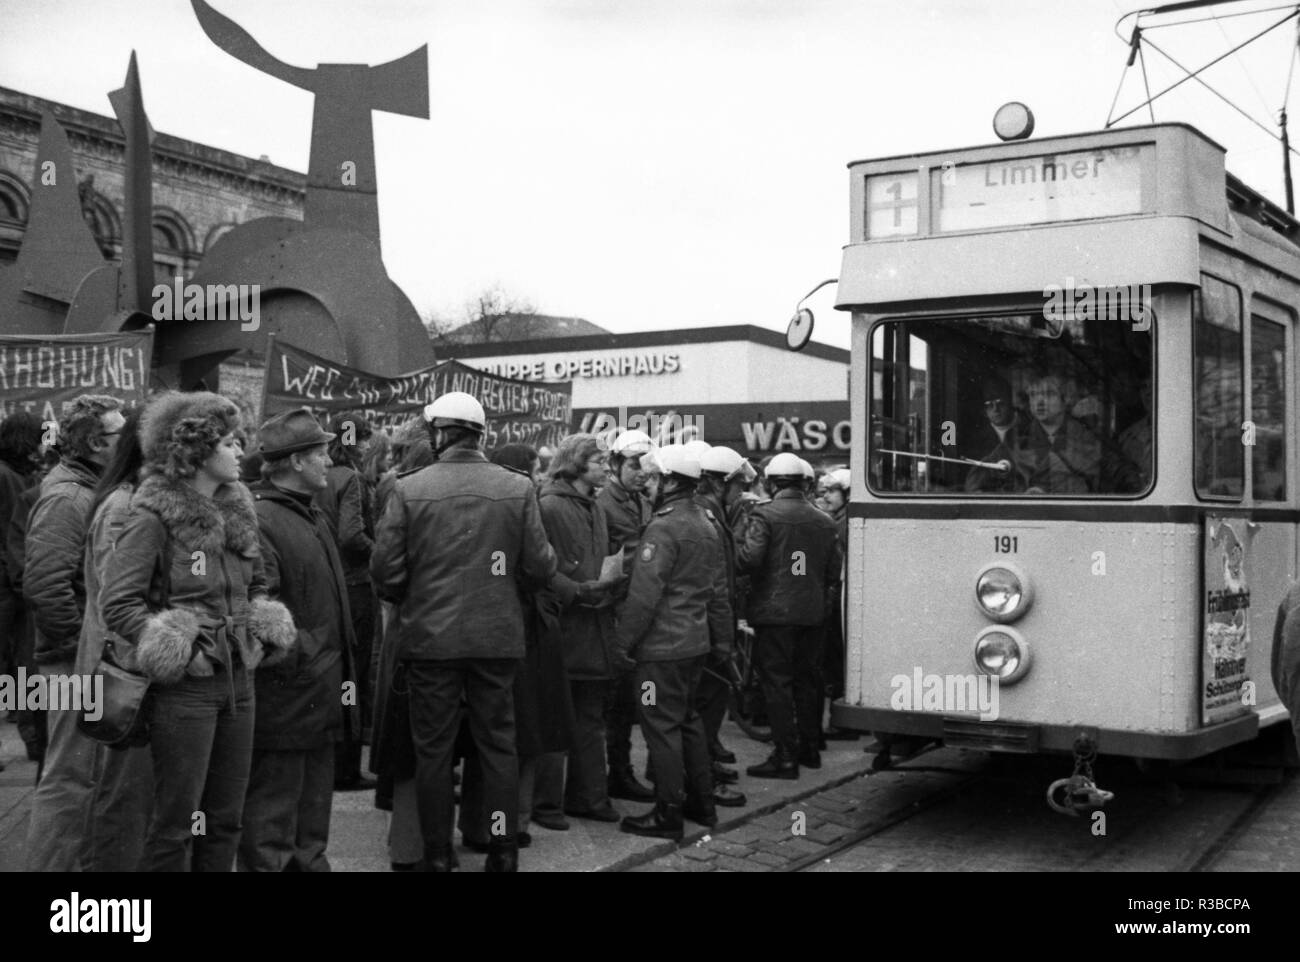 Les manifestations contre la hausse des tarifs et de l'autobus au début du mois d'avril 1975 à Hanovre font partie de la campagne 'Point rouge'. Des autocollants avec un point rouge sur une voiture a indiqué que les passagers seraient prises le long. Dans le monde d'utilisation | Banque D'Images